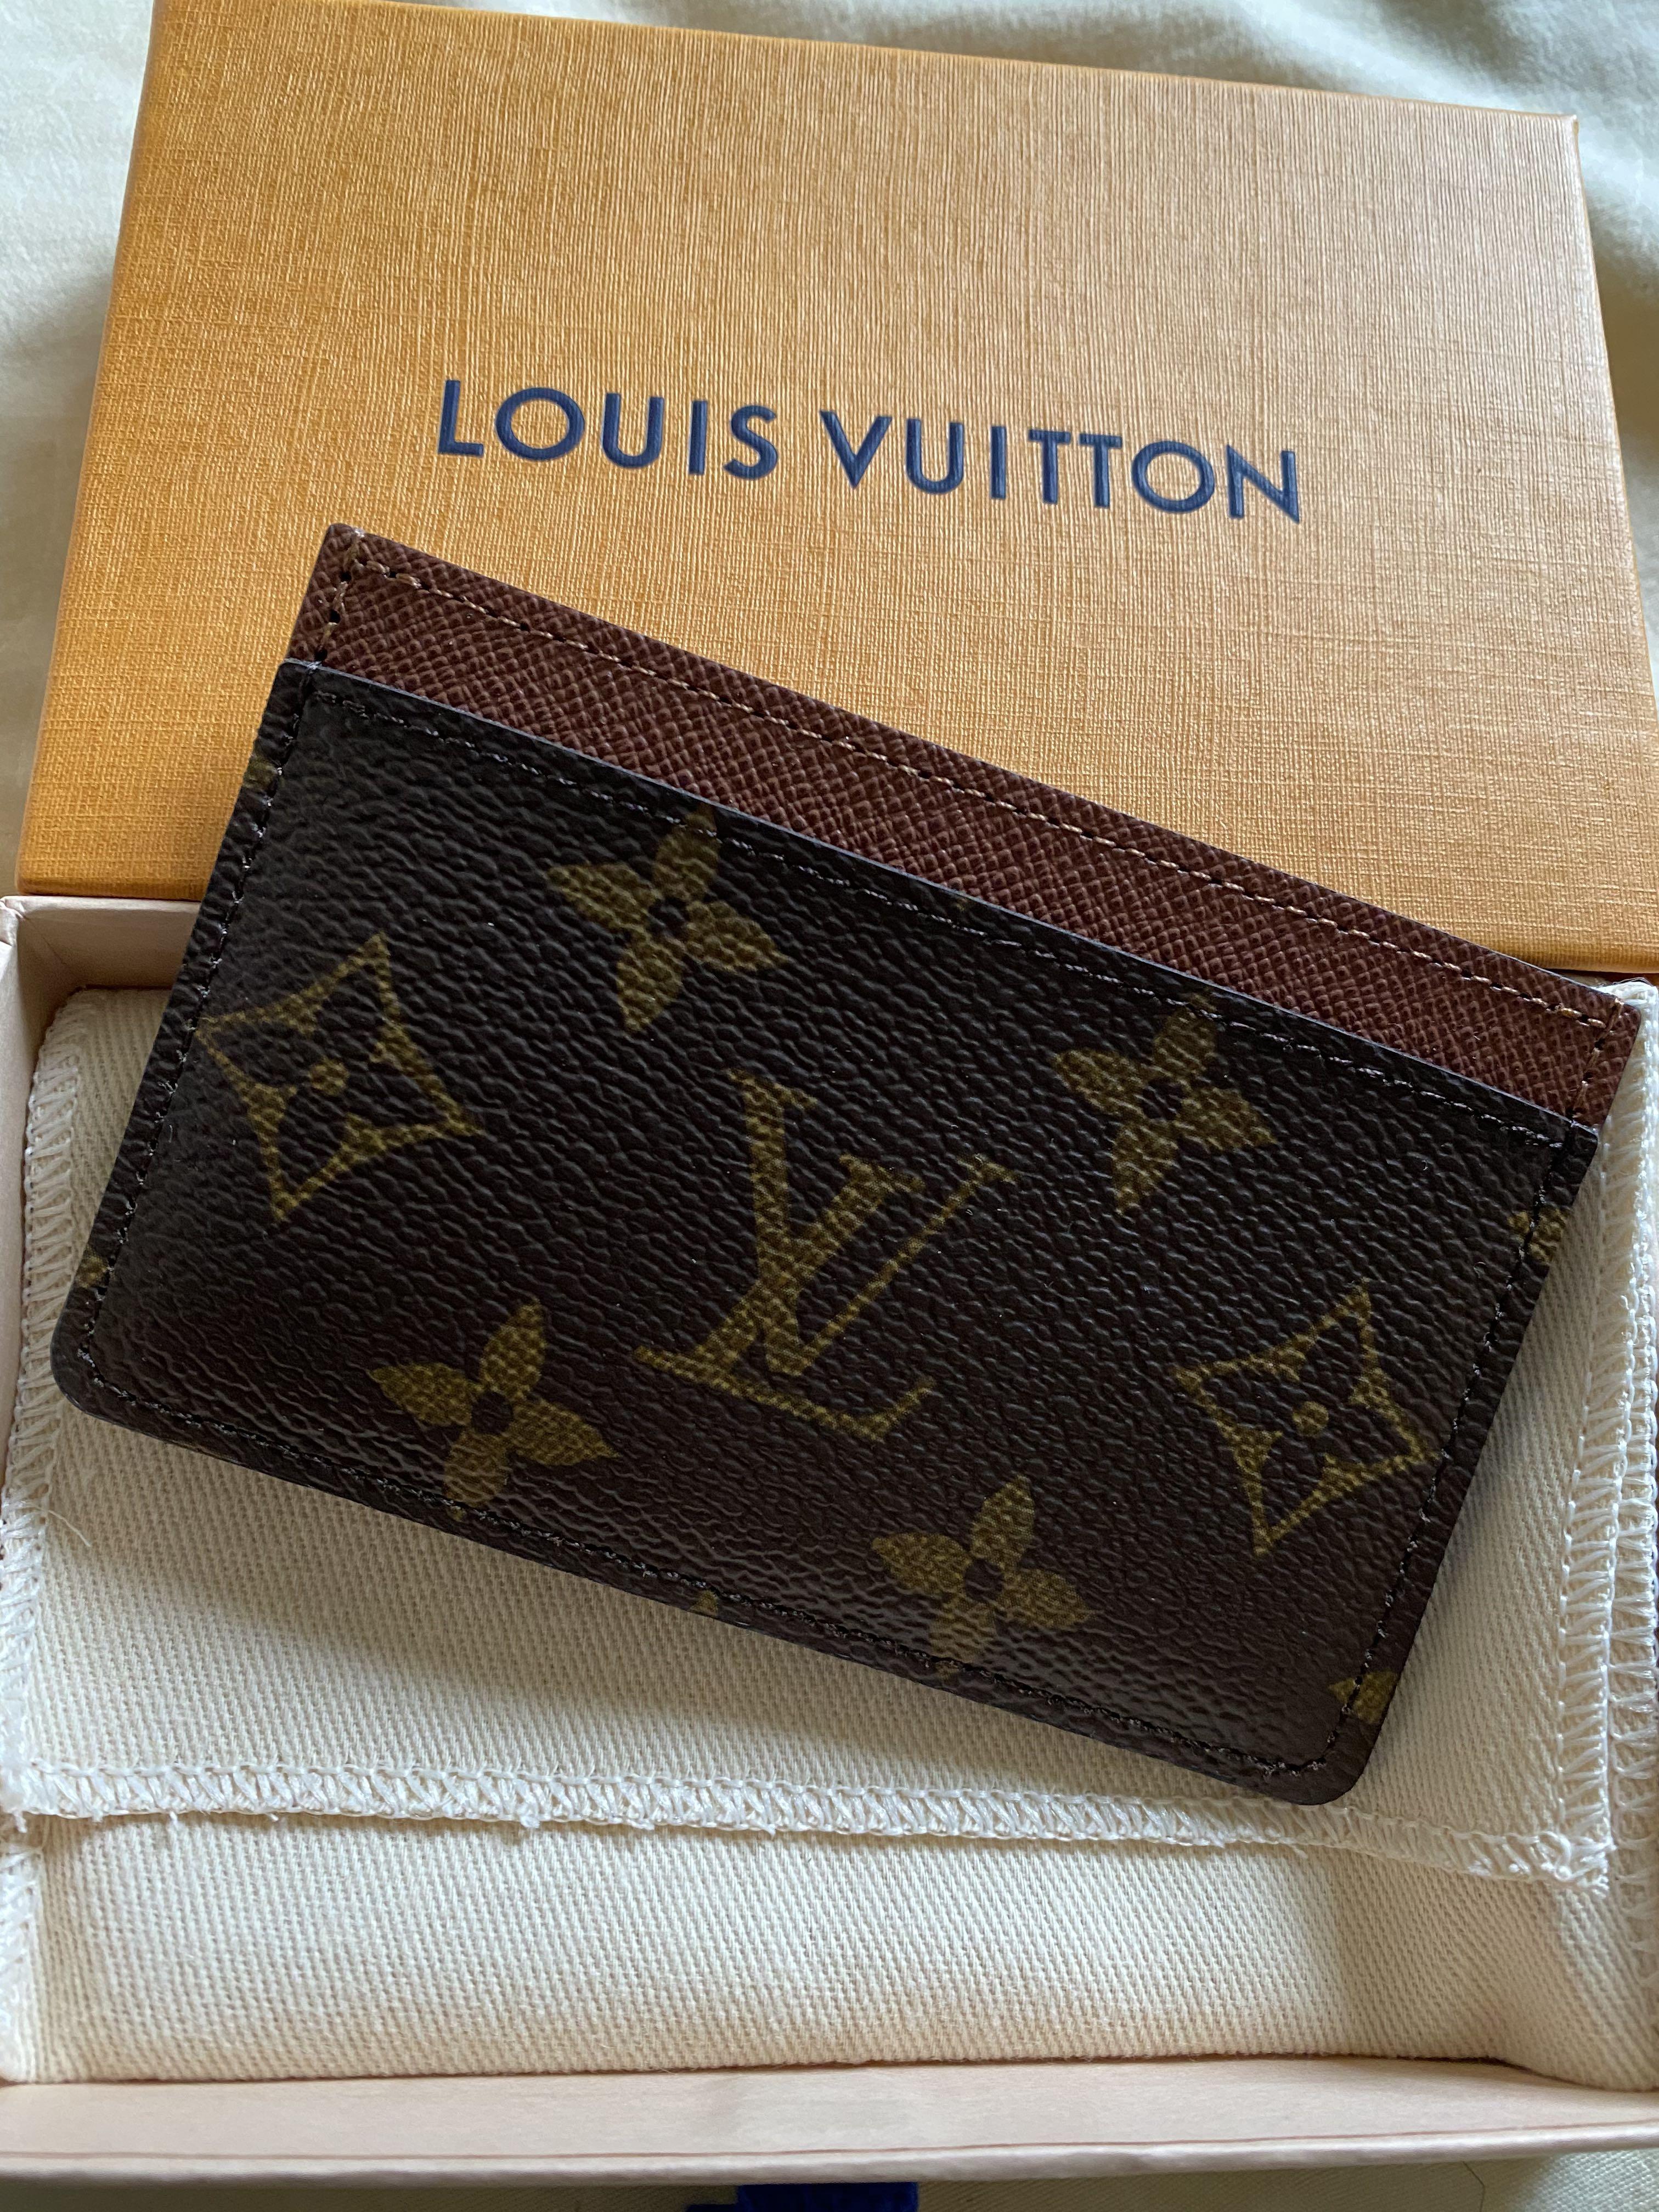 Shop Louis Vuitton MONOGRAM Card holder (M60703, M61733) by Maisondesoeur